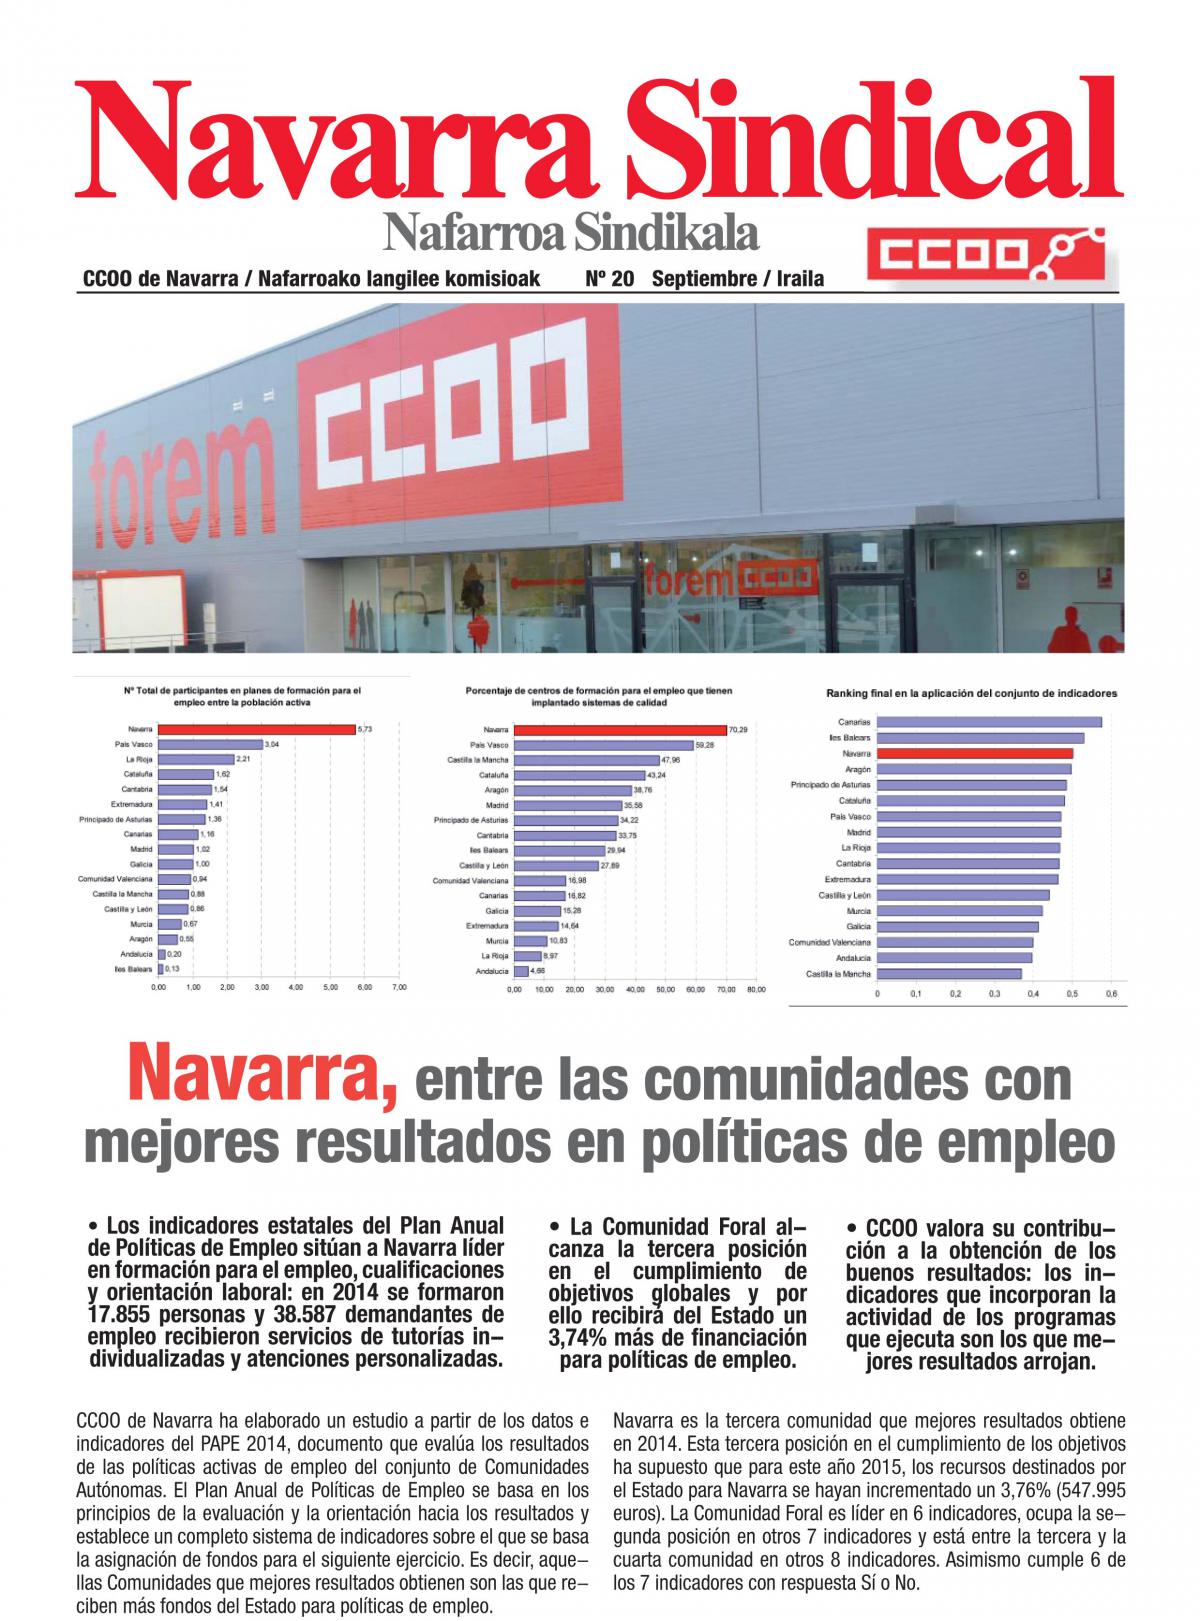 Navarra, entre las comunidades con mejores resultados en políticas de empleo